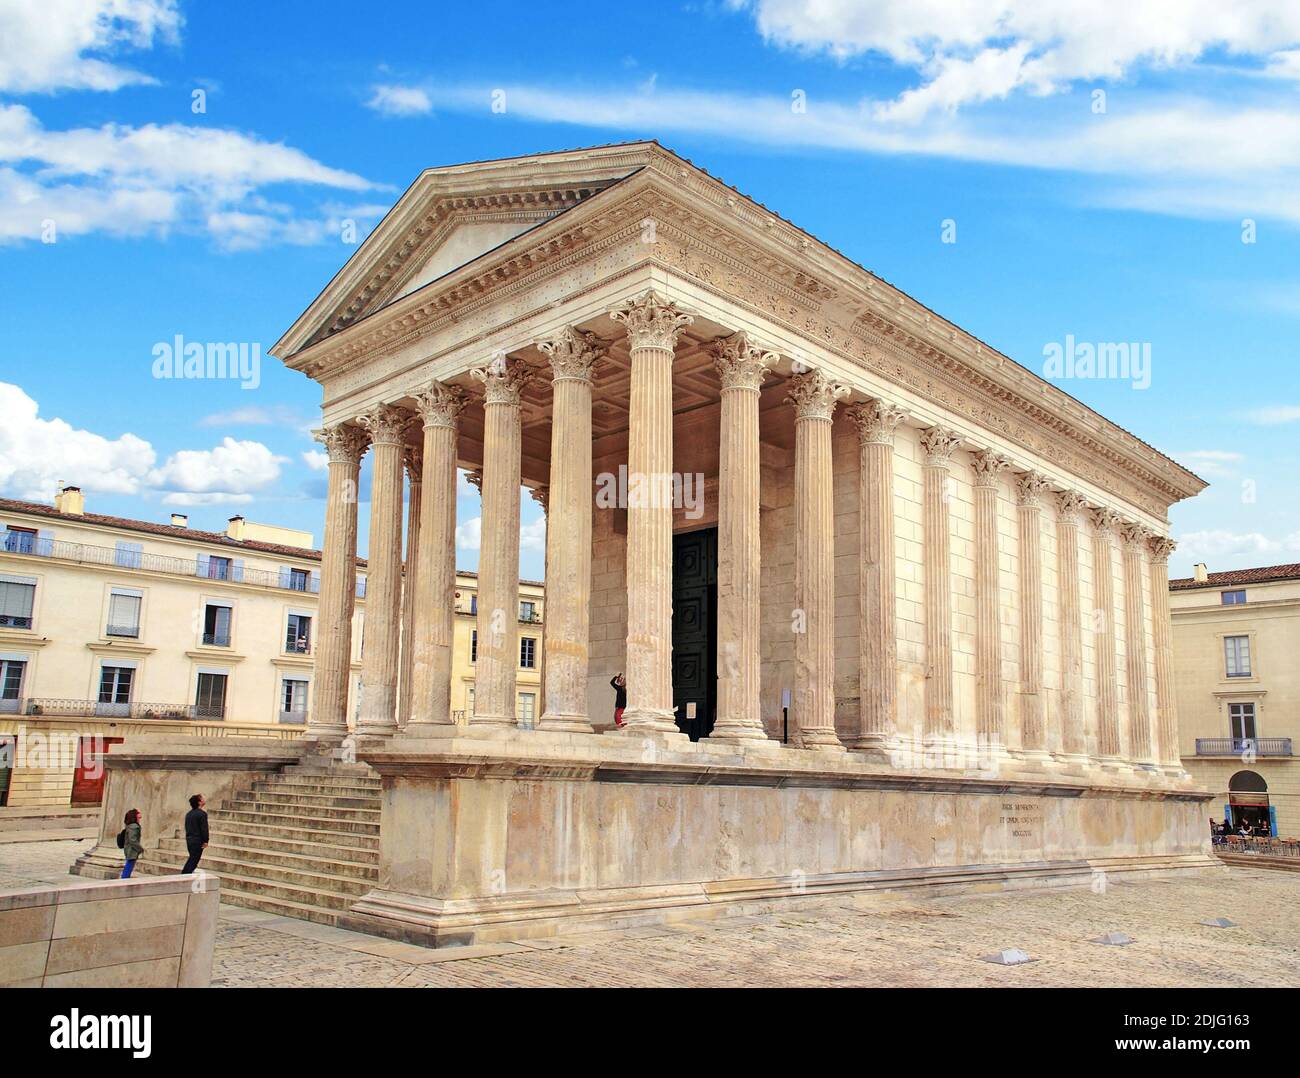 La célèbre maison carrée, vestige romain à Nîmes en Occitania, France. Banque D'Images